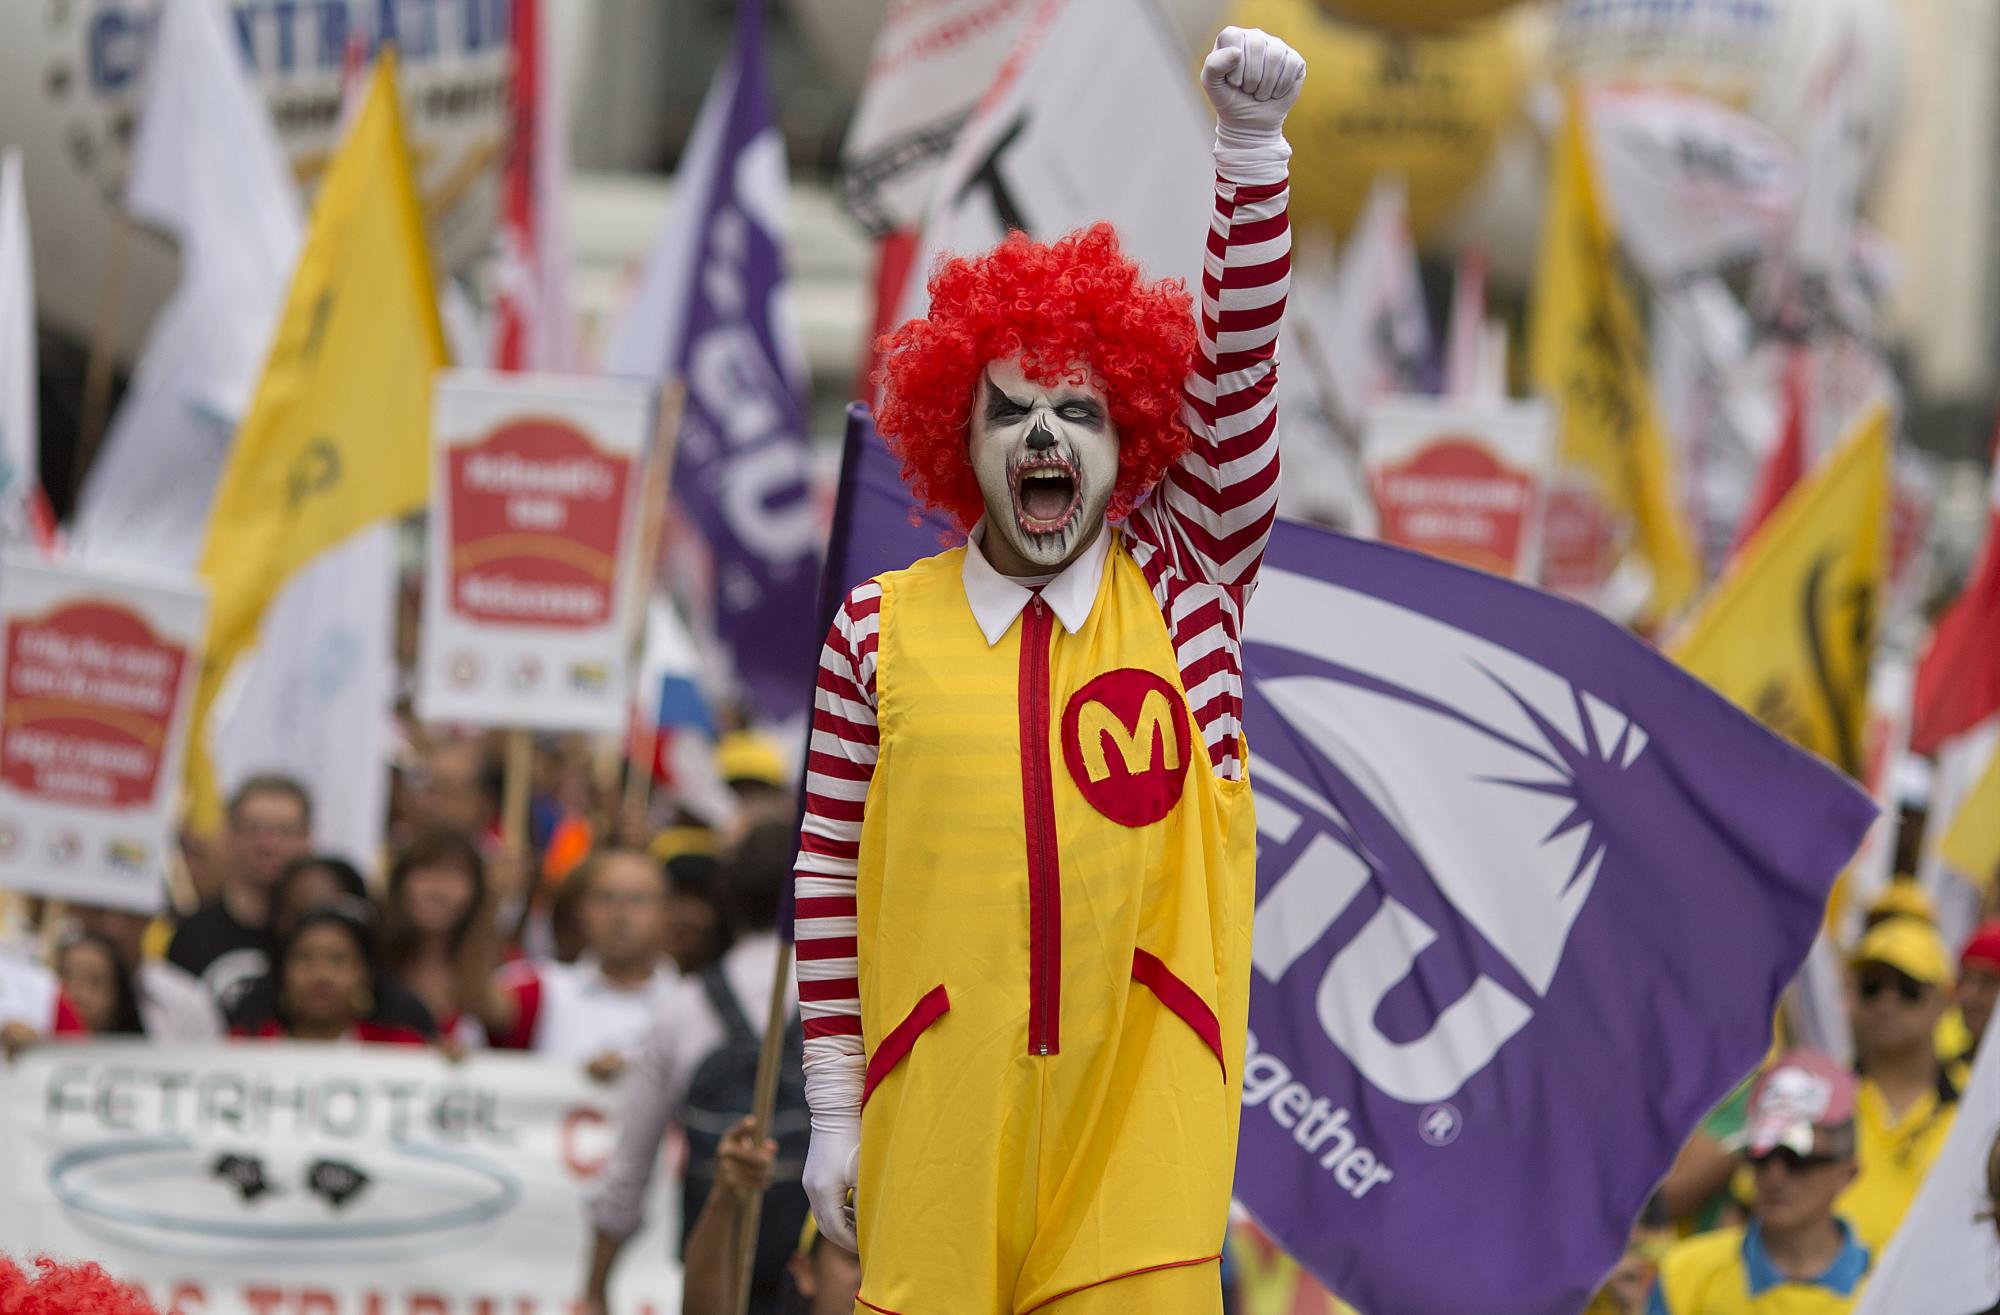 En esta imagen del martes 18 de agosto de 2015, un manifestante vestido como Ronald McDonald protesta para pedir mejores salarios y condiciones de trabajo para empleados de comida rápida en Sao Paulo, Brasil. La protesta reunió a trabajadores de McDonalds, representantes de sindicatos de 20 países y miembros del Sindicato de Trabajadores de Restaurantes.